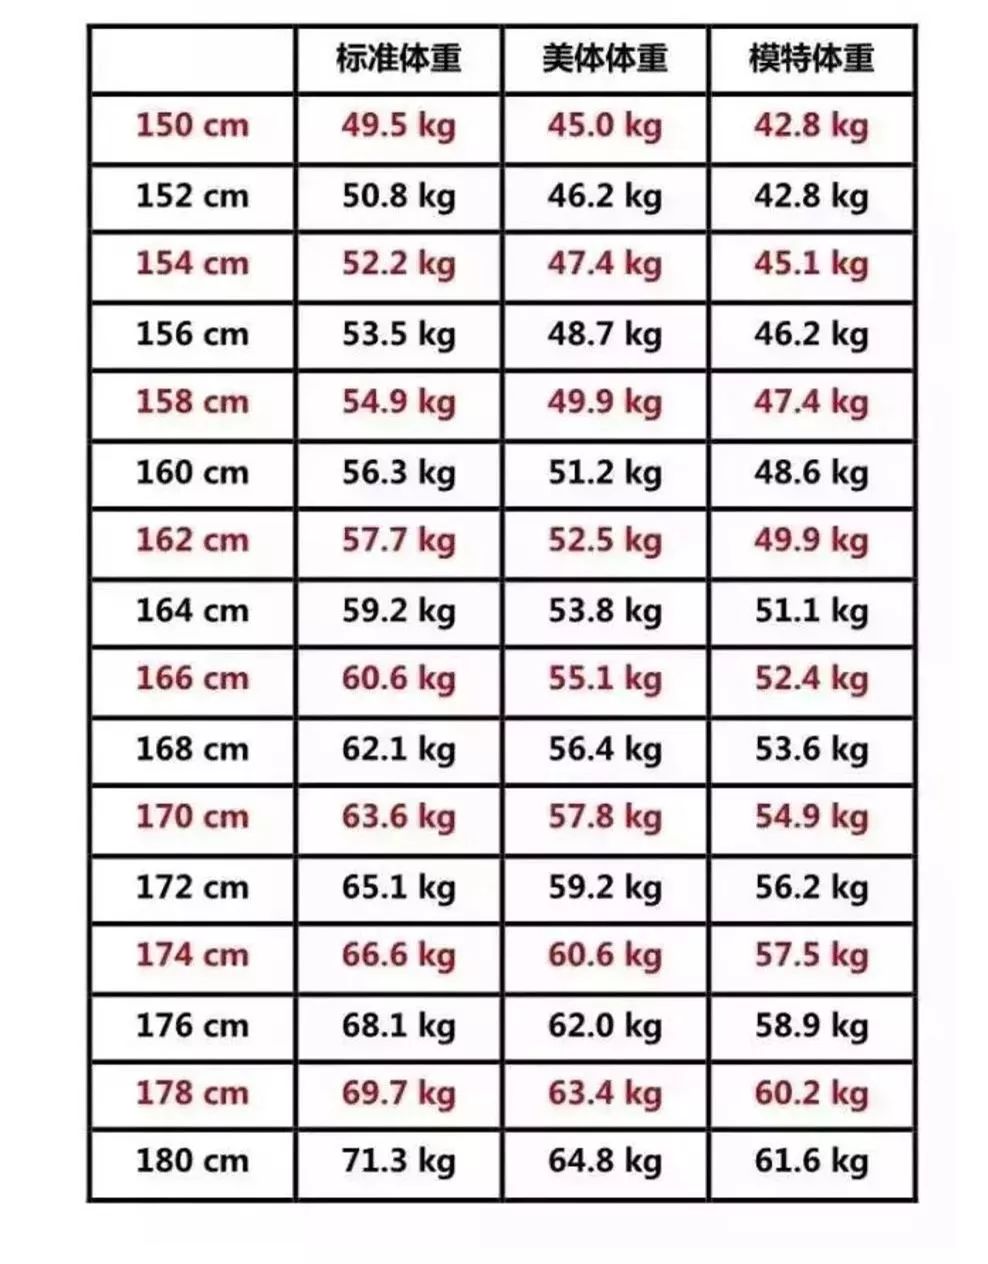 2018女生标准体重对照表  快看看你在哪个档次婴儿身高体重对照表